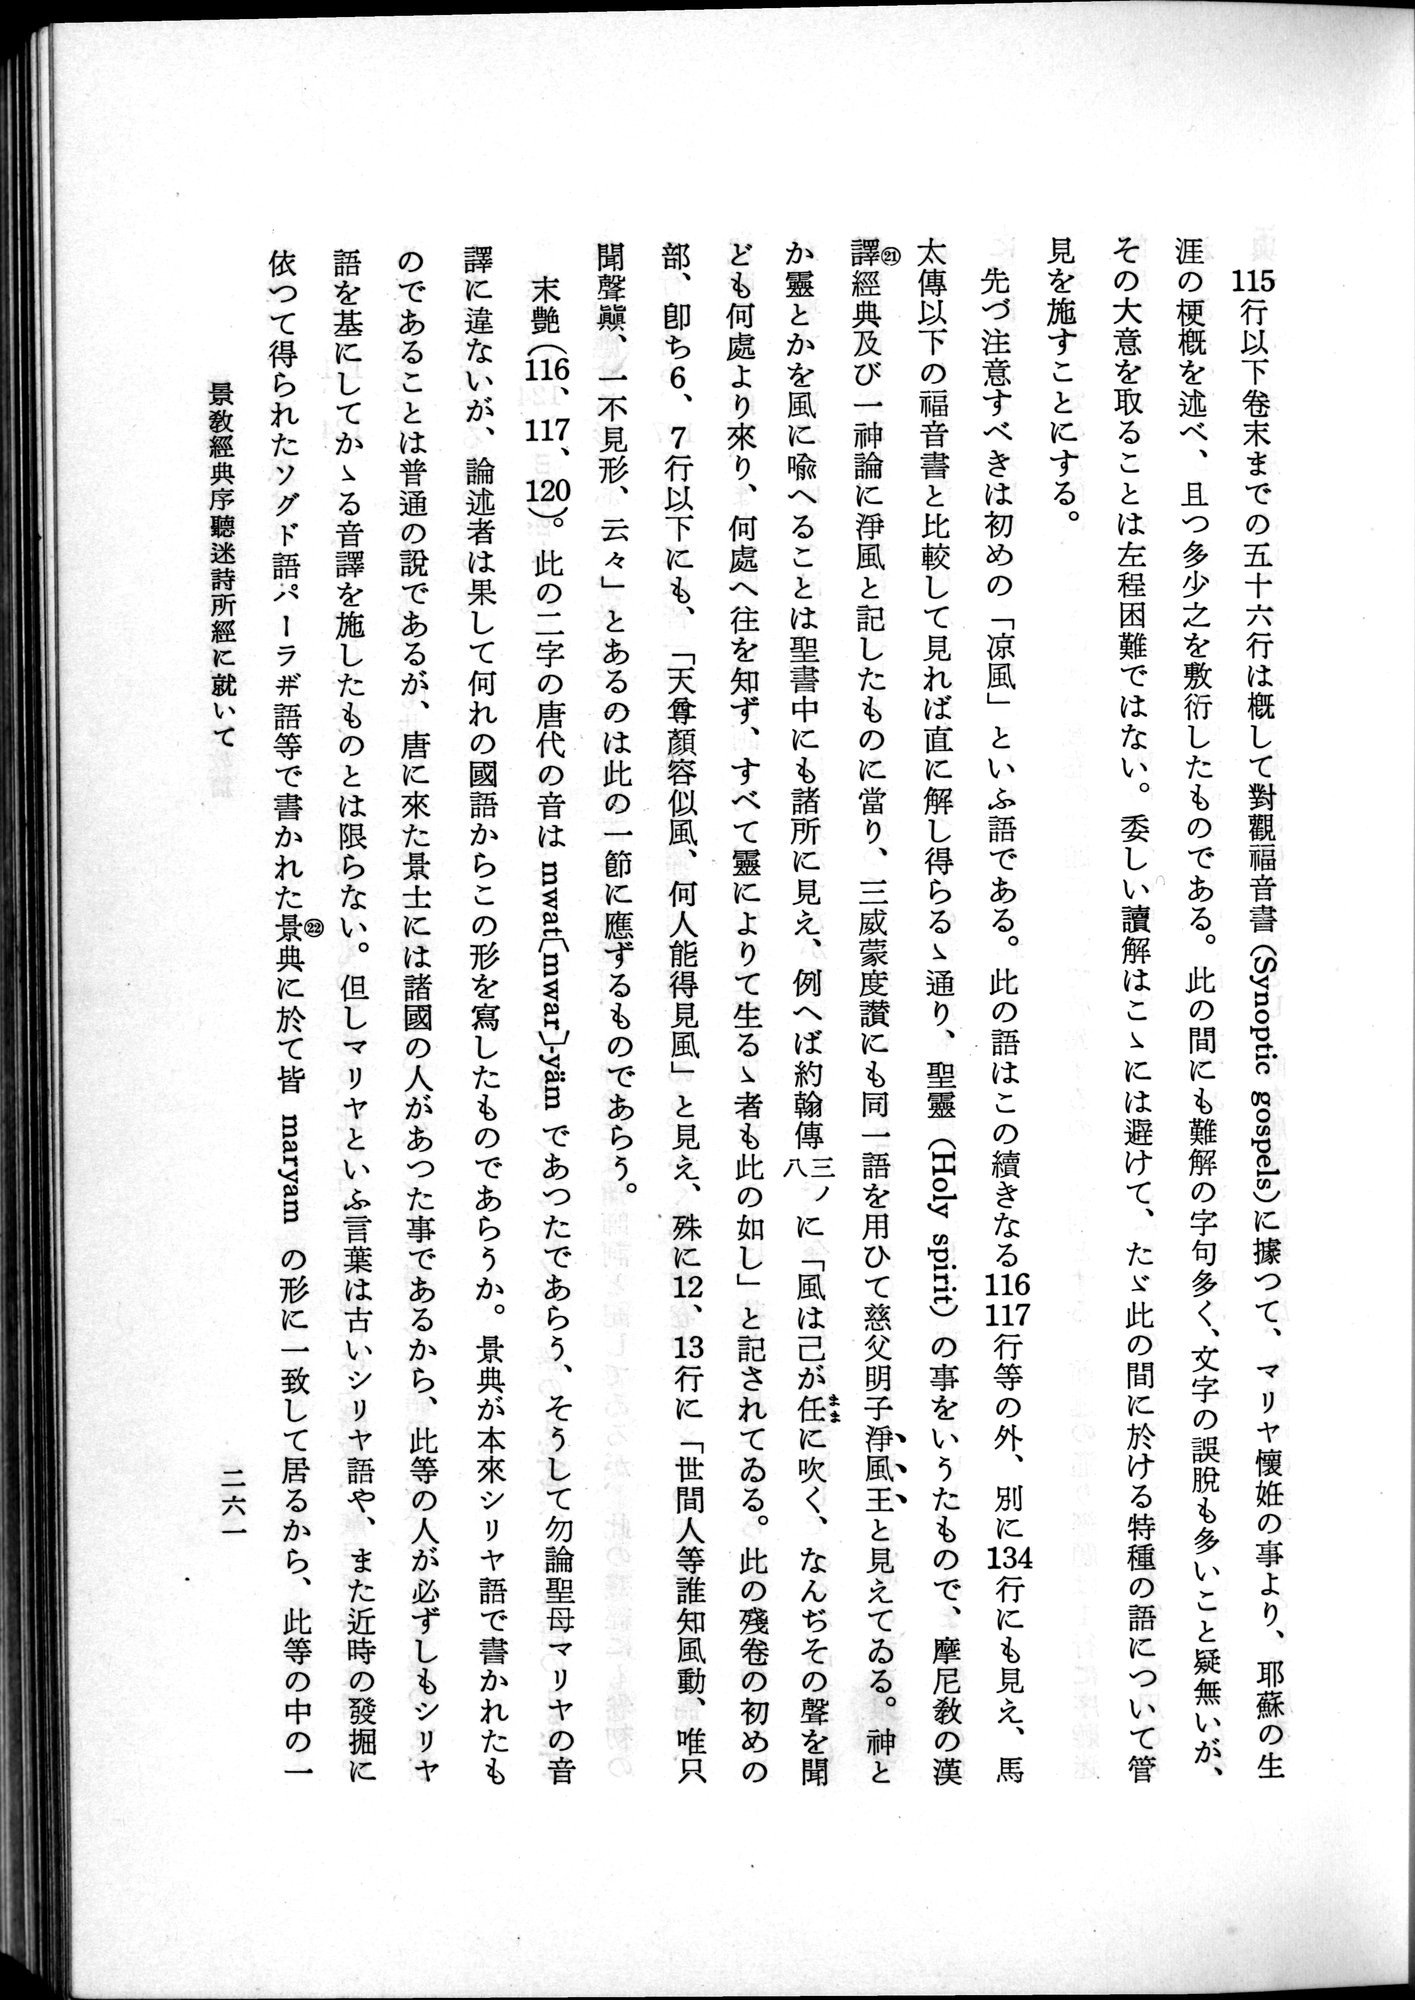 羽田博士史学論文集 : vol.2 / Page 323 (Grayscale High Resolution Image)